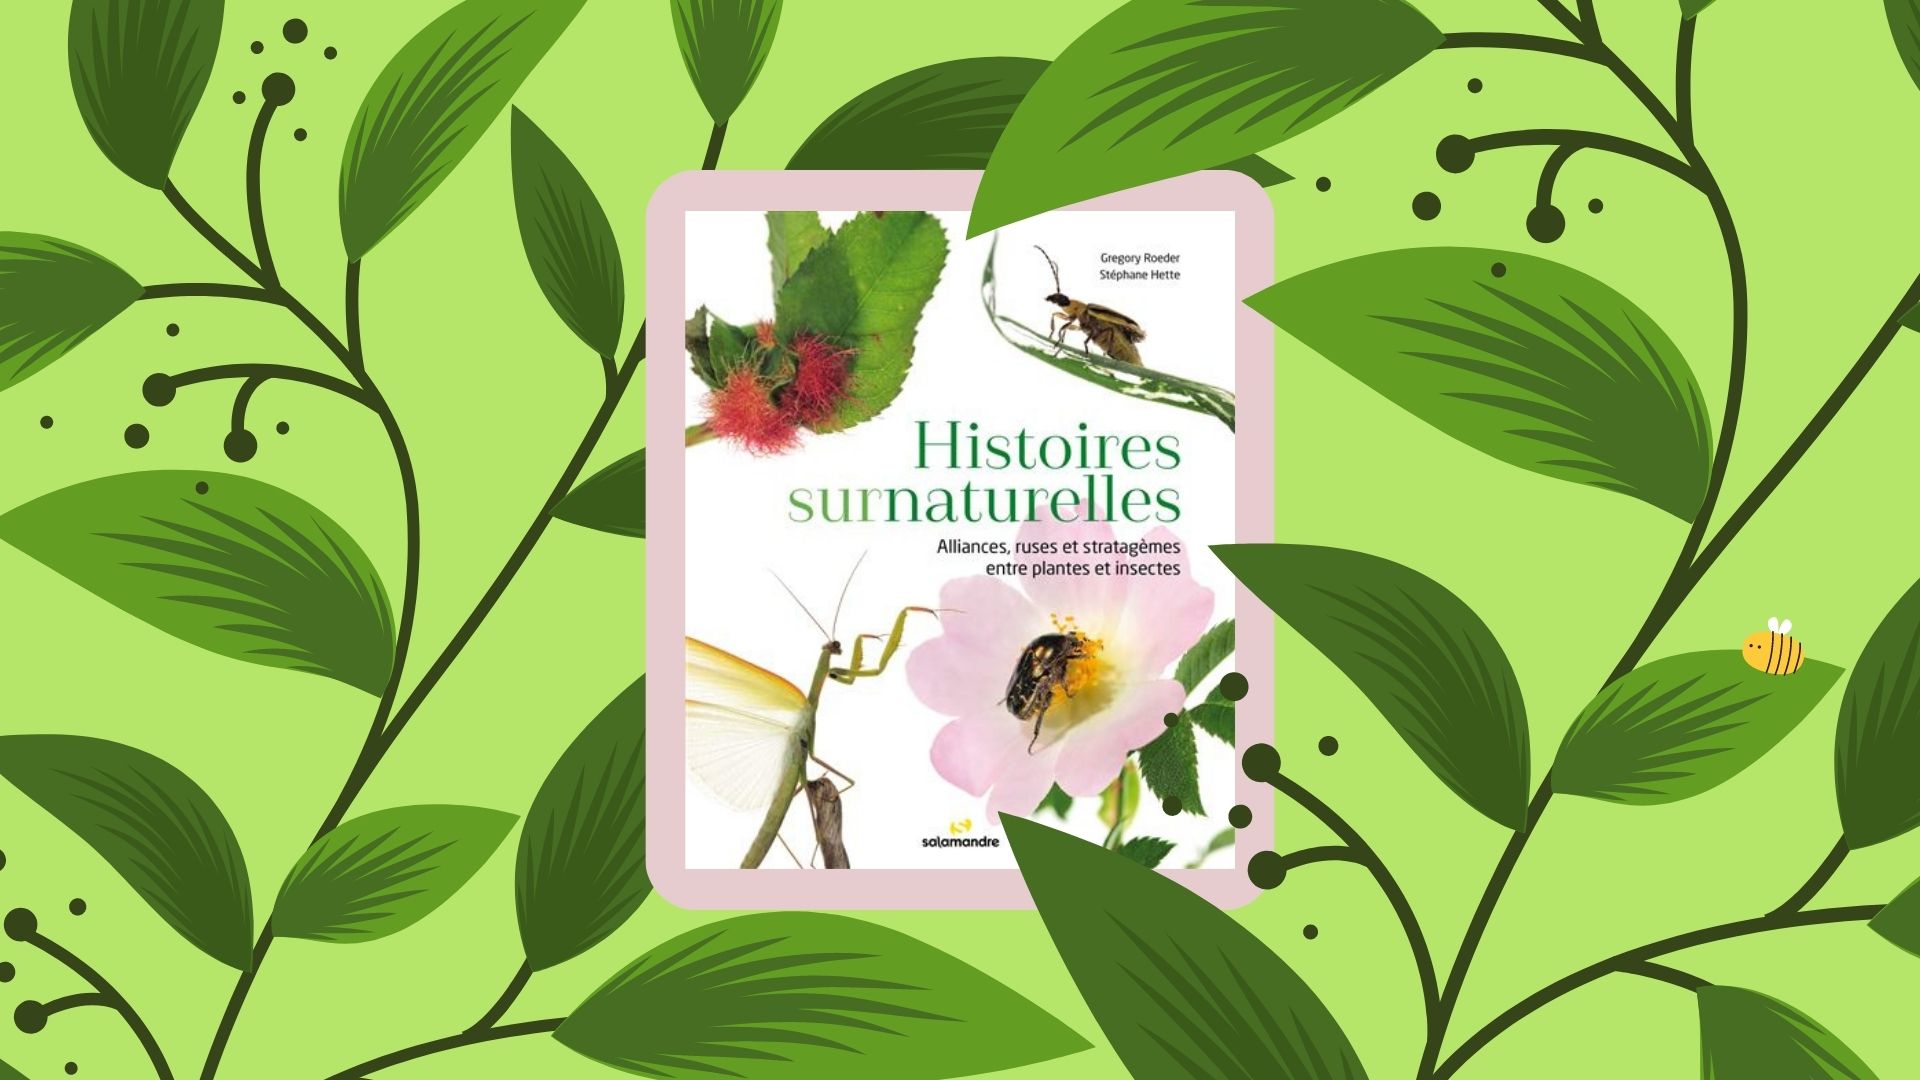 Le livre "Histoires surnaturelles: Alliances, ruses et stratagèmes entre plantes et insectes" (Éditions Salamandre, 2022).